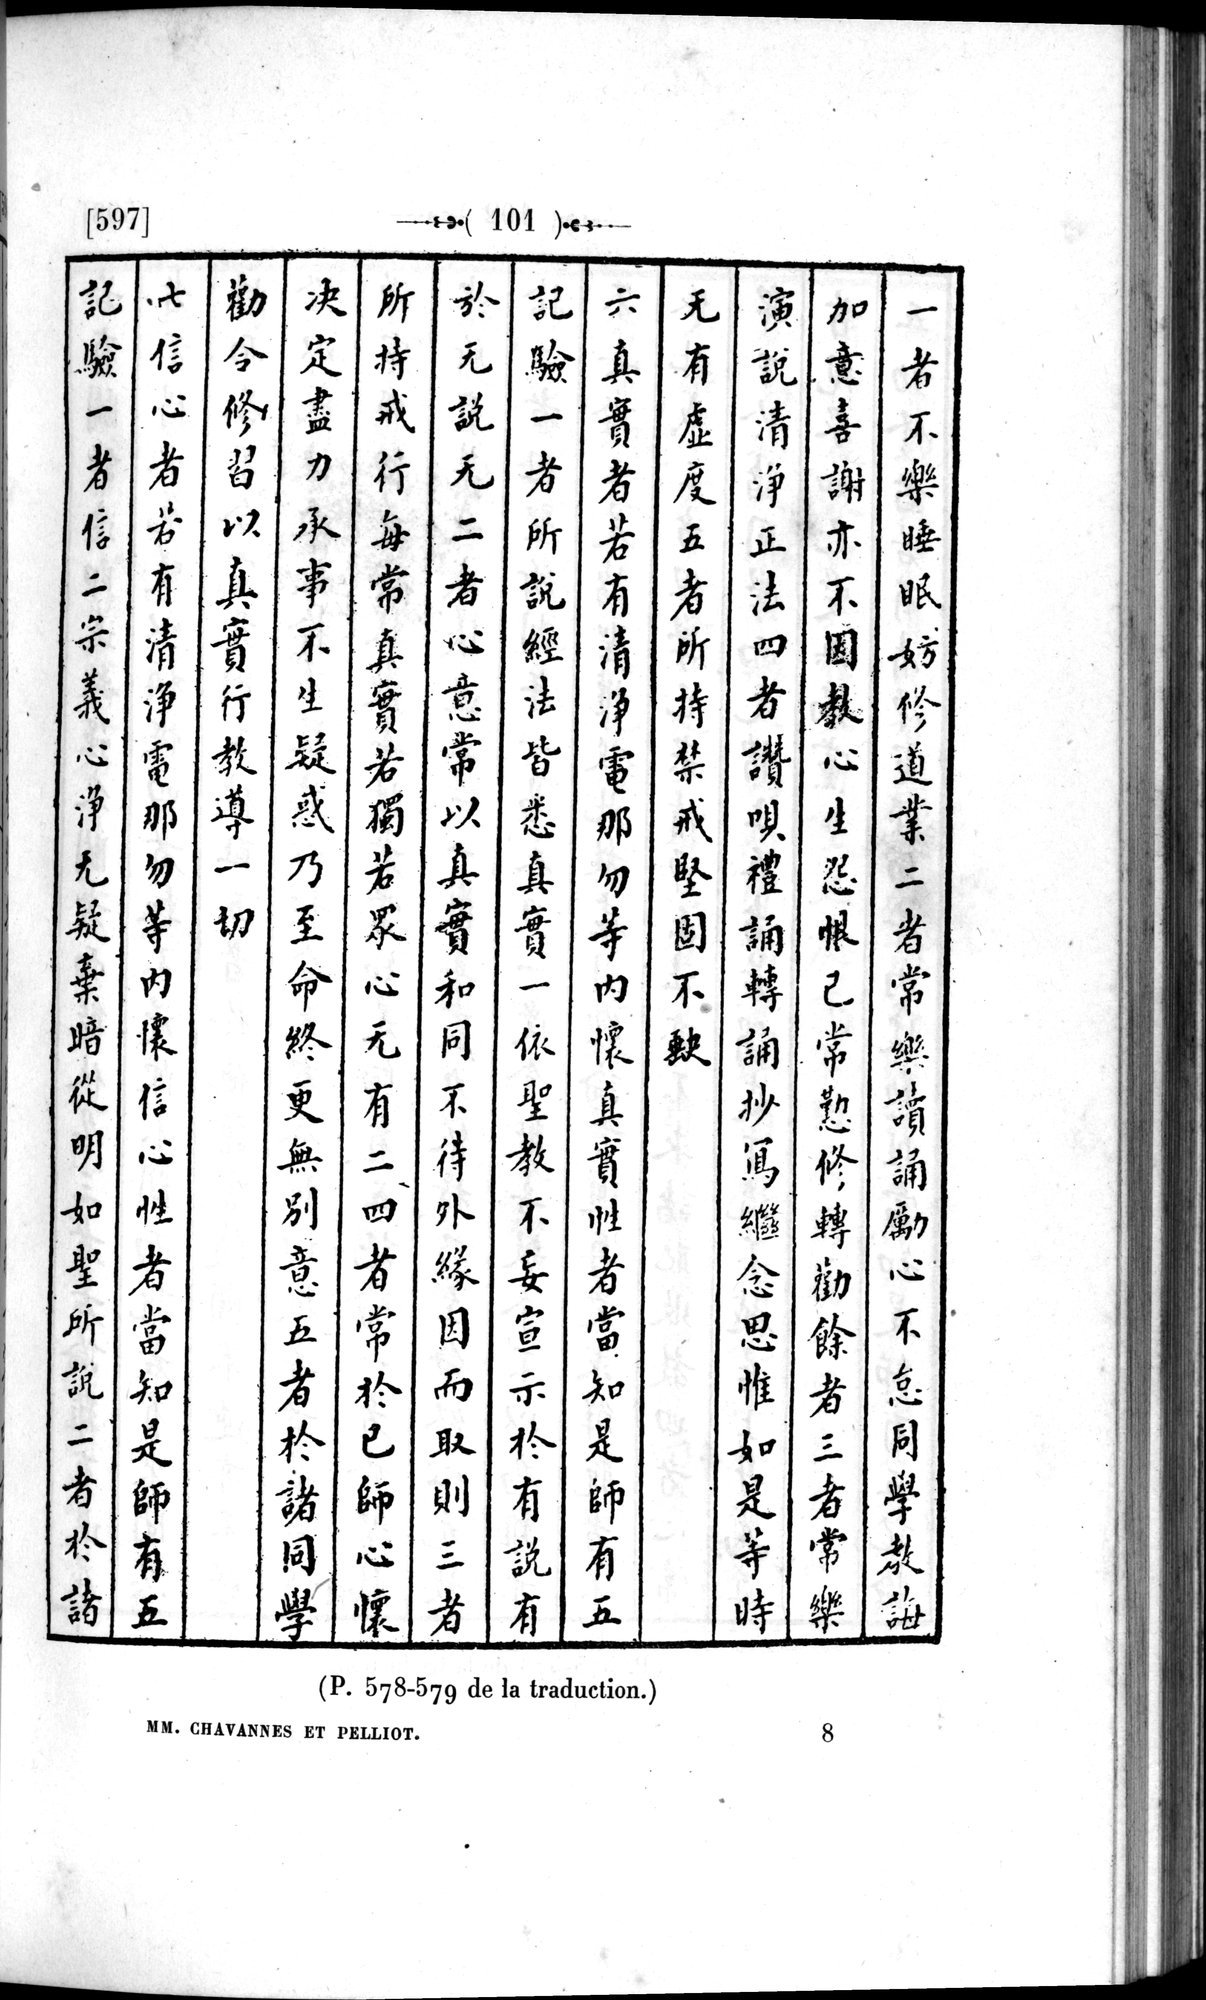 Un traité manichéen retrouvé en Chine : vol.1 / Page 111 (Grayscale High Resolution Image)